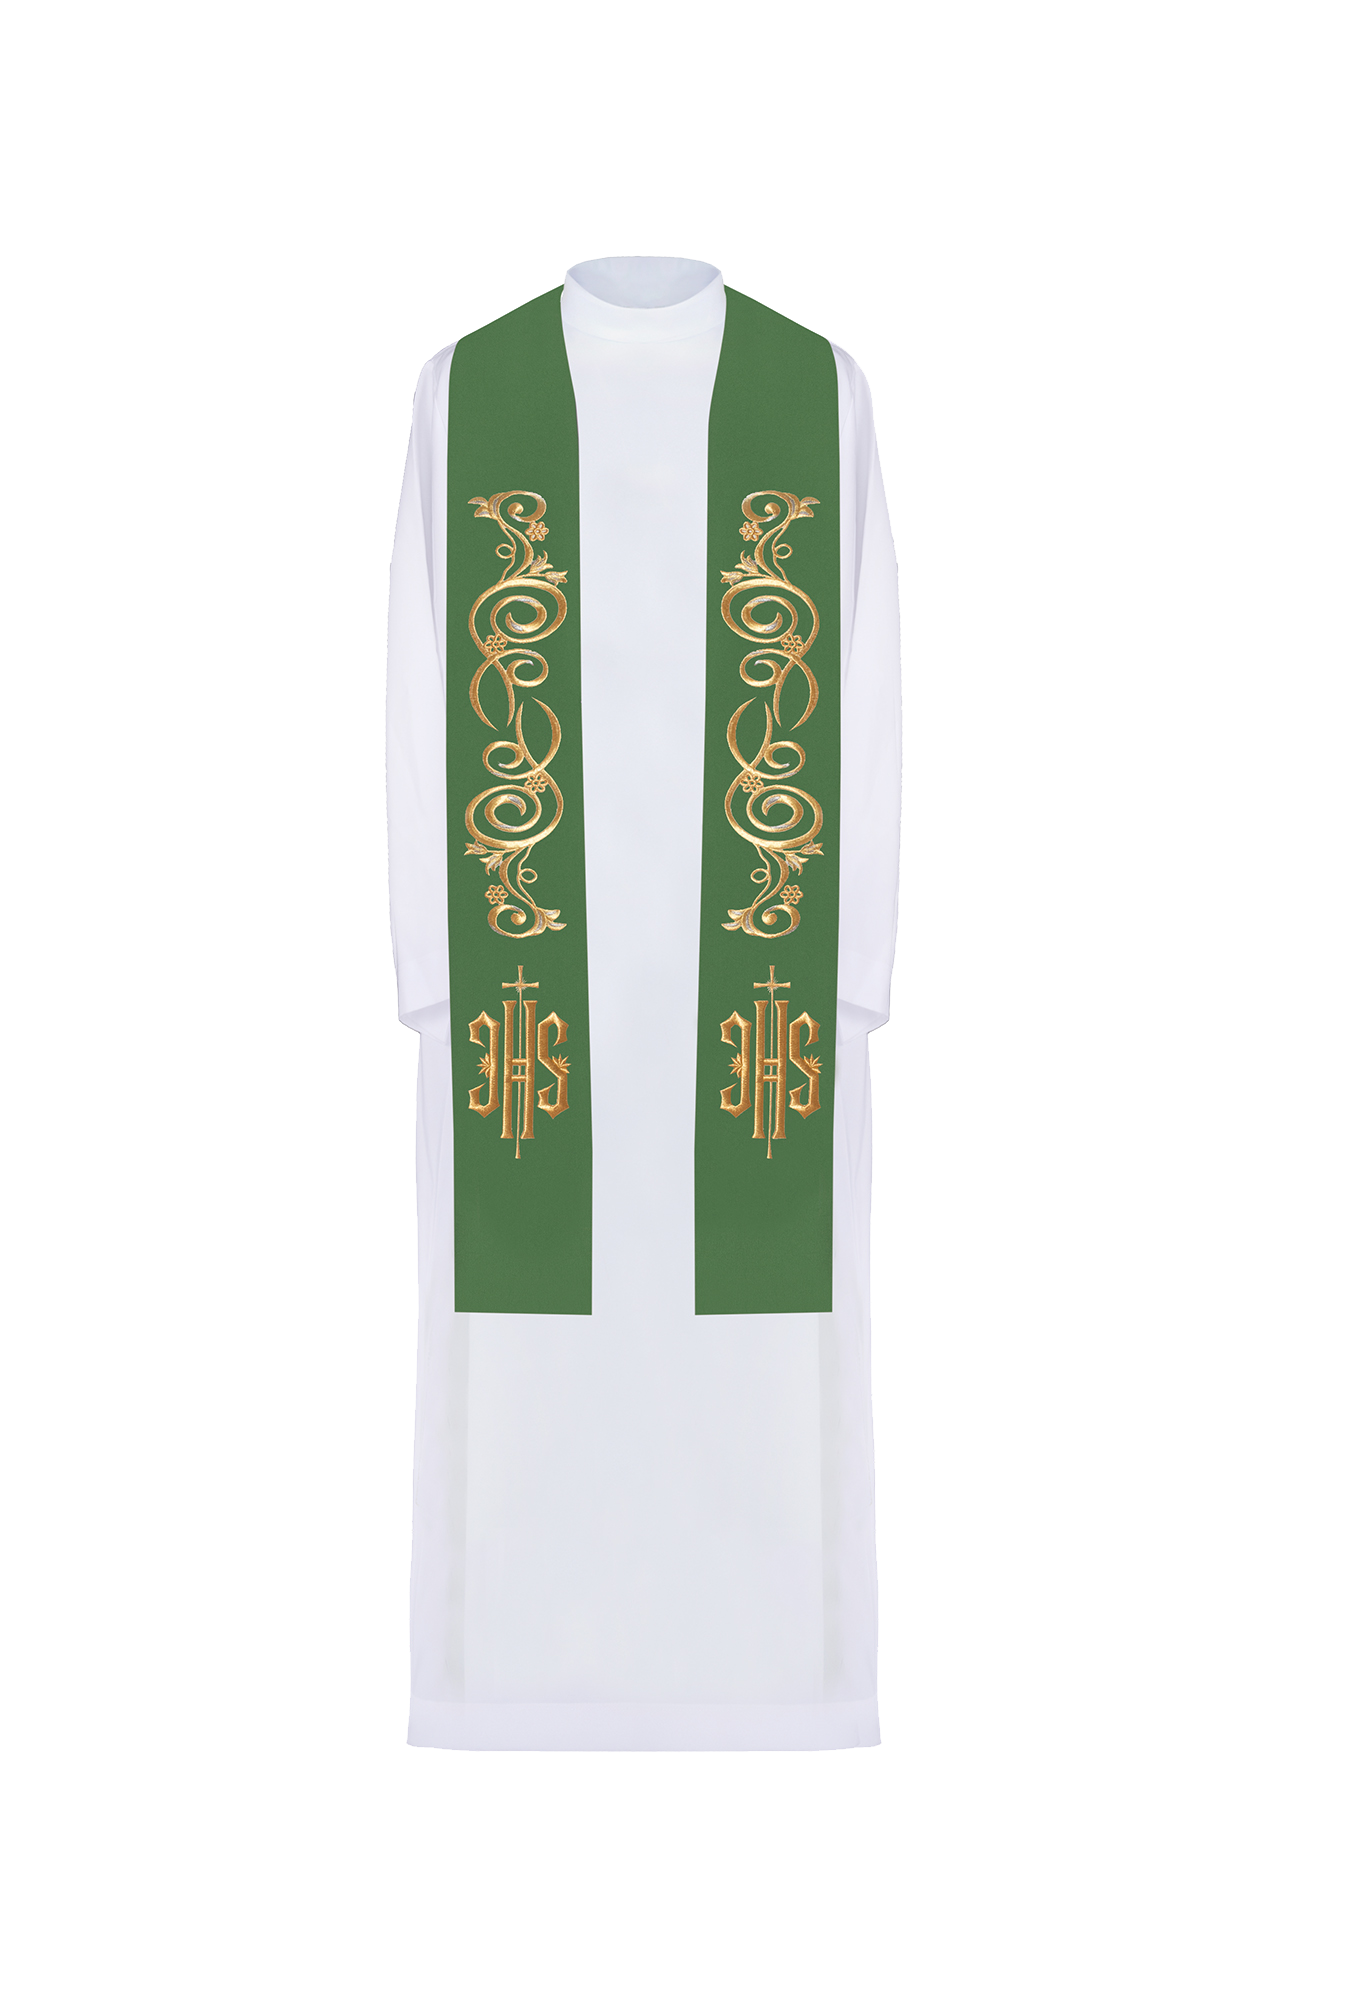 Stuła kapłańska haftowana IHS Zielona